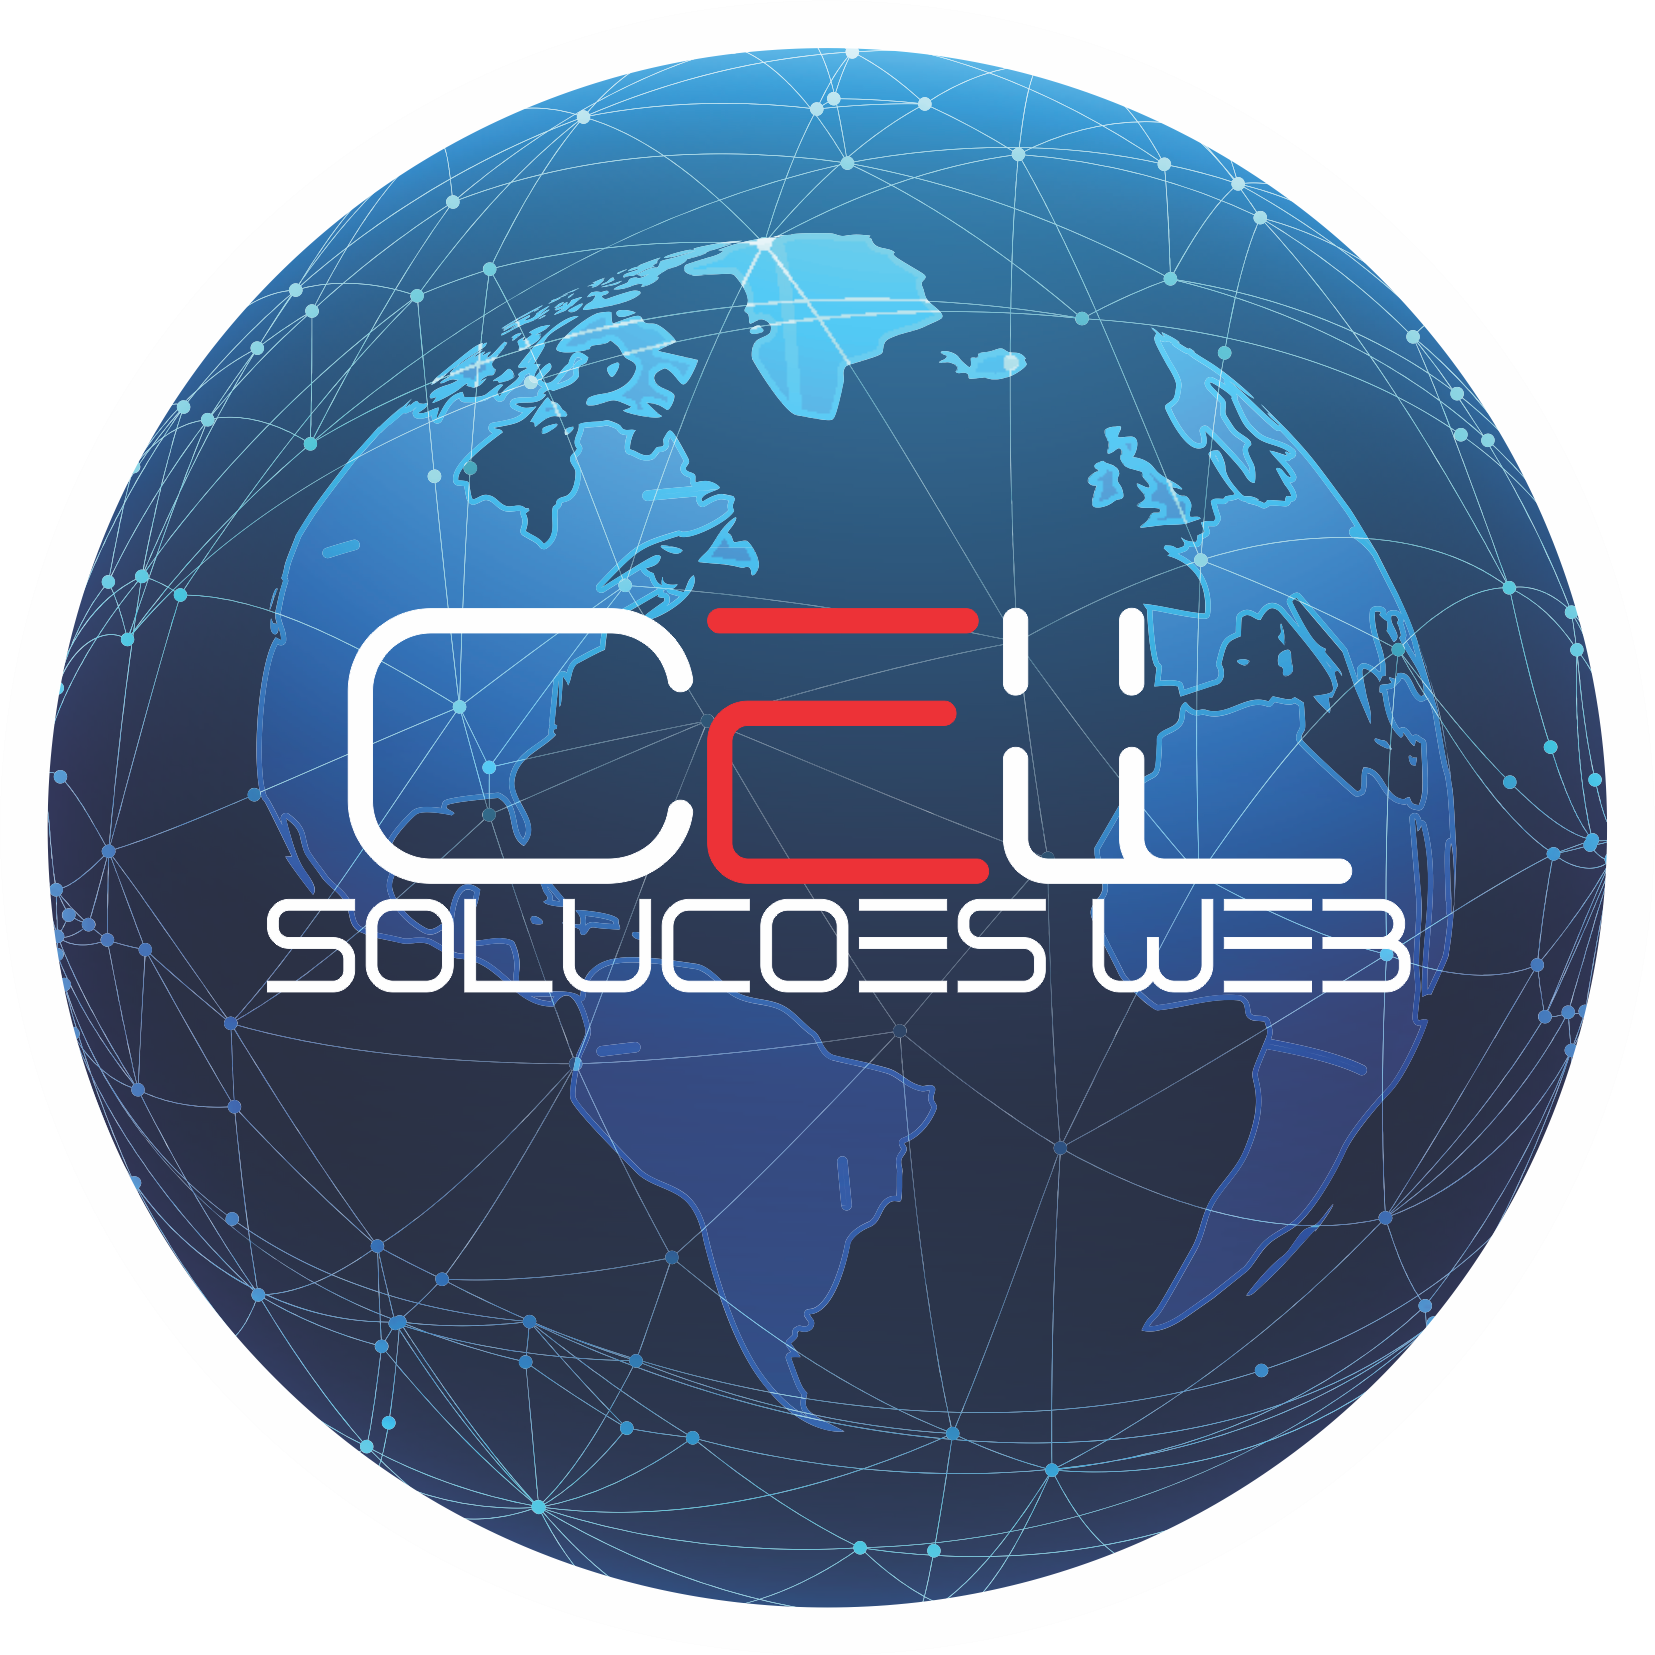 CellSolucoes Logo Oficial